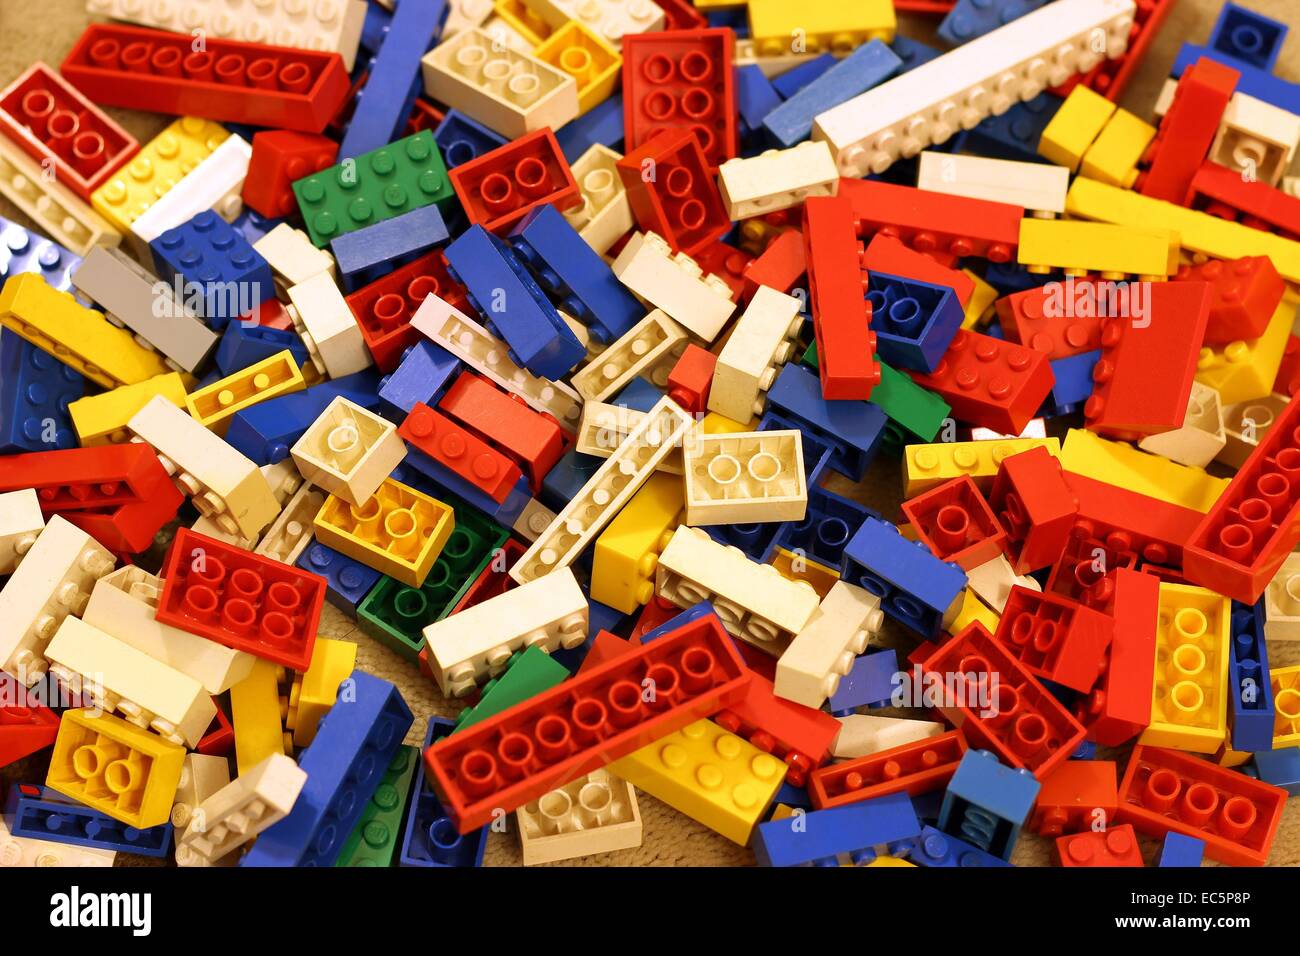 Las piezas de Lego en alfombras Foto de stock